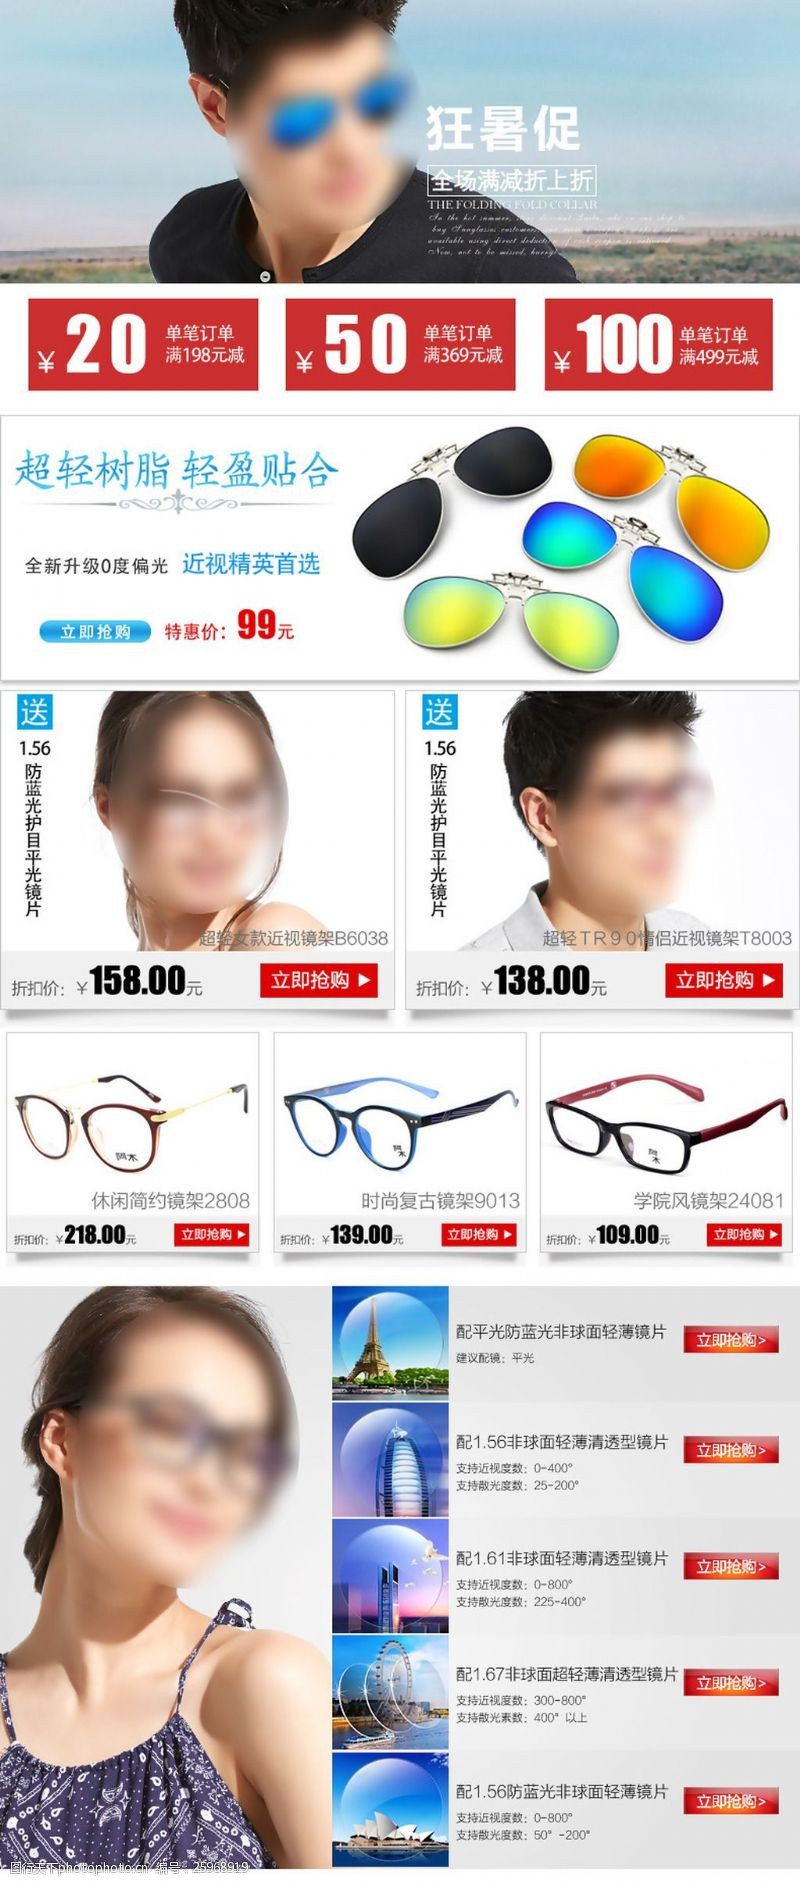 眼镜设计眼镜淘宝宝贝详情关联销售推荐搭配套餐设计